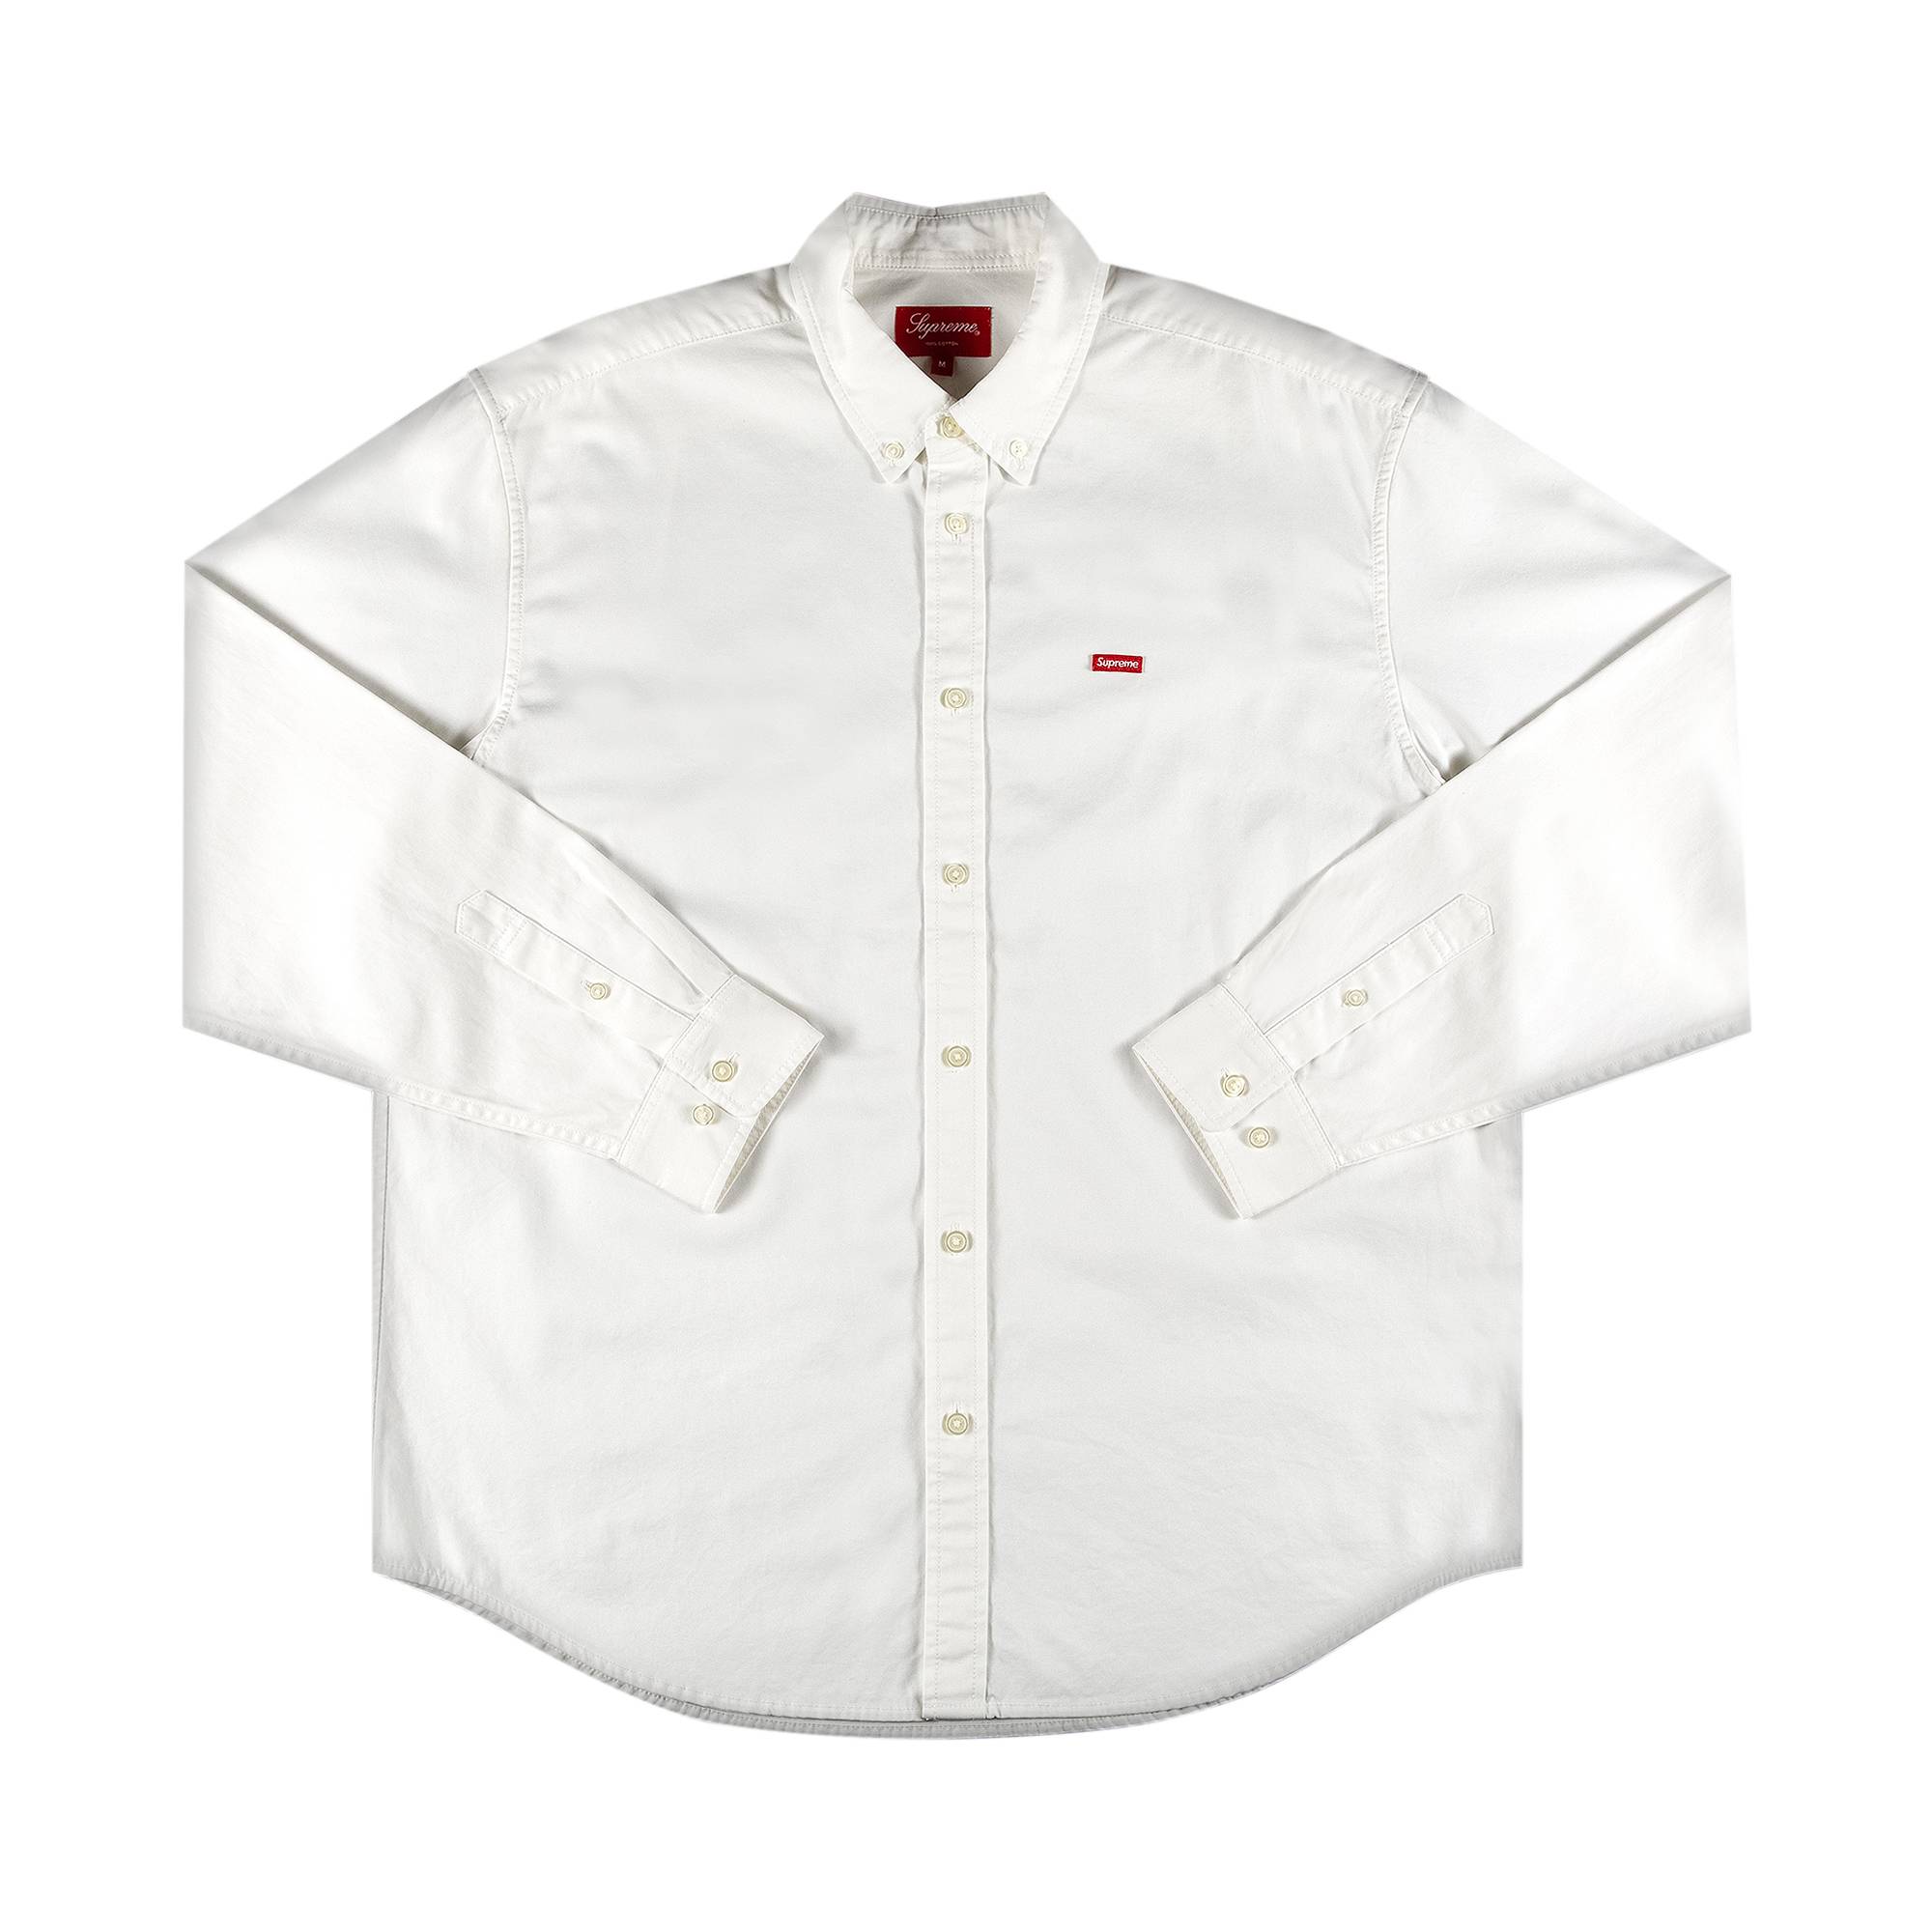 Supreme Small Box Twill Shirt 'White' - Supreme - FW21S30 WHITE | GOAT